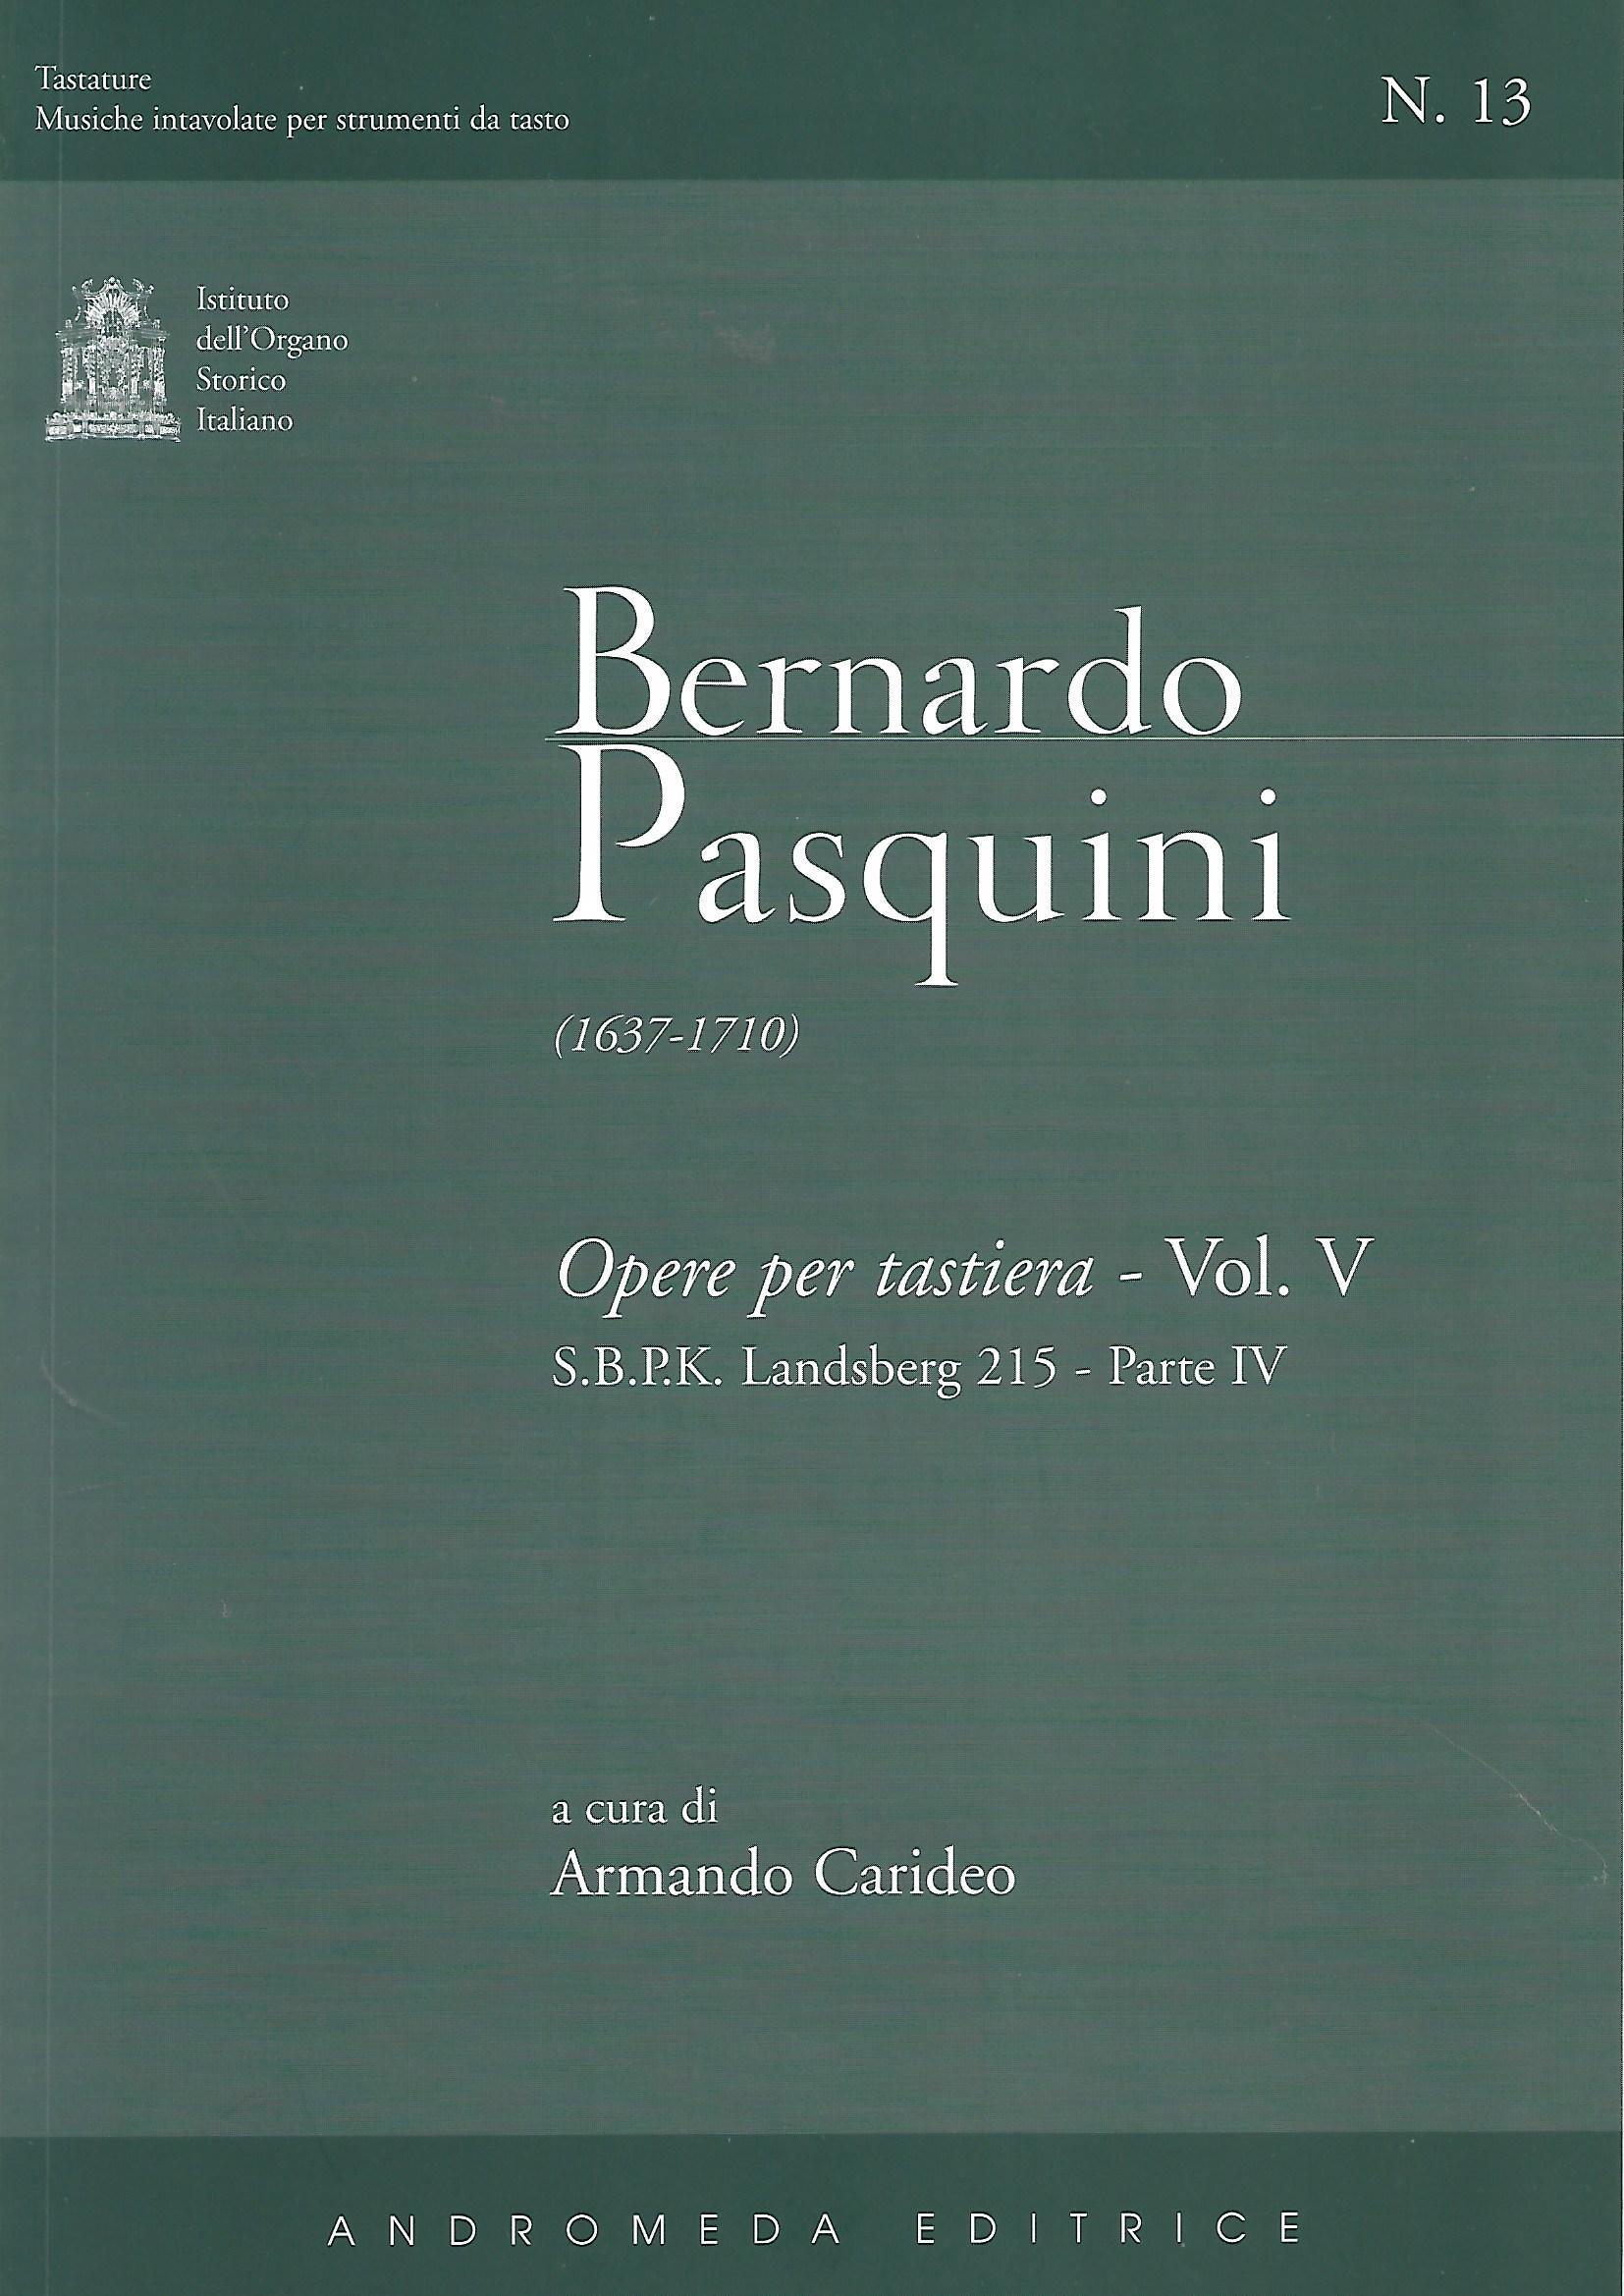 TA13 Pasquini Bernardo - Opere per tastiera, Vol V